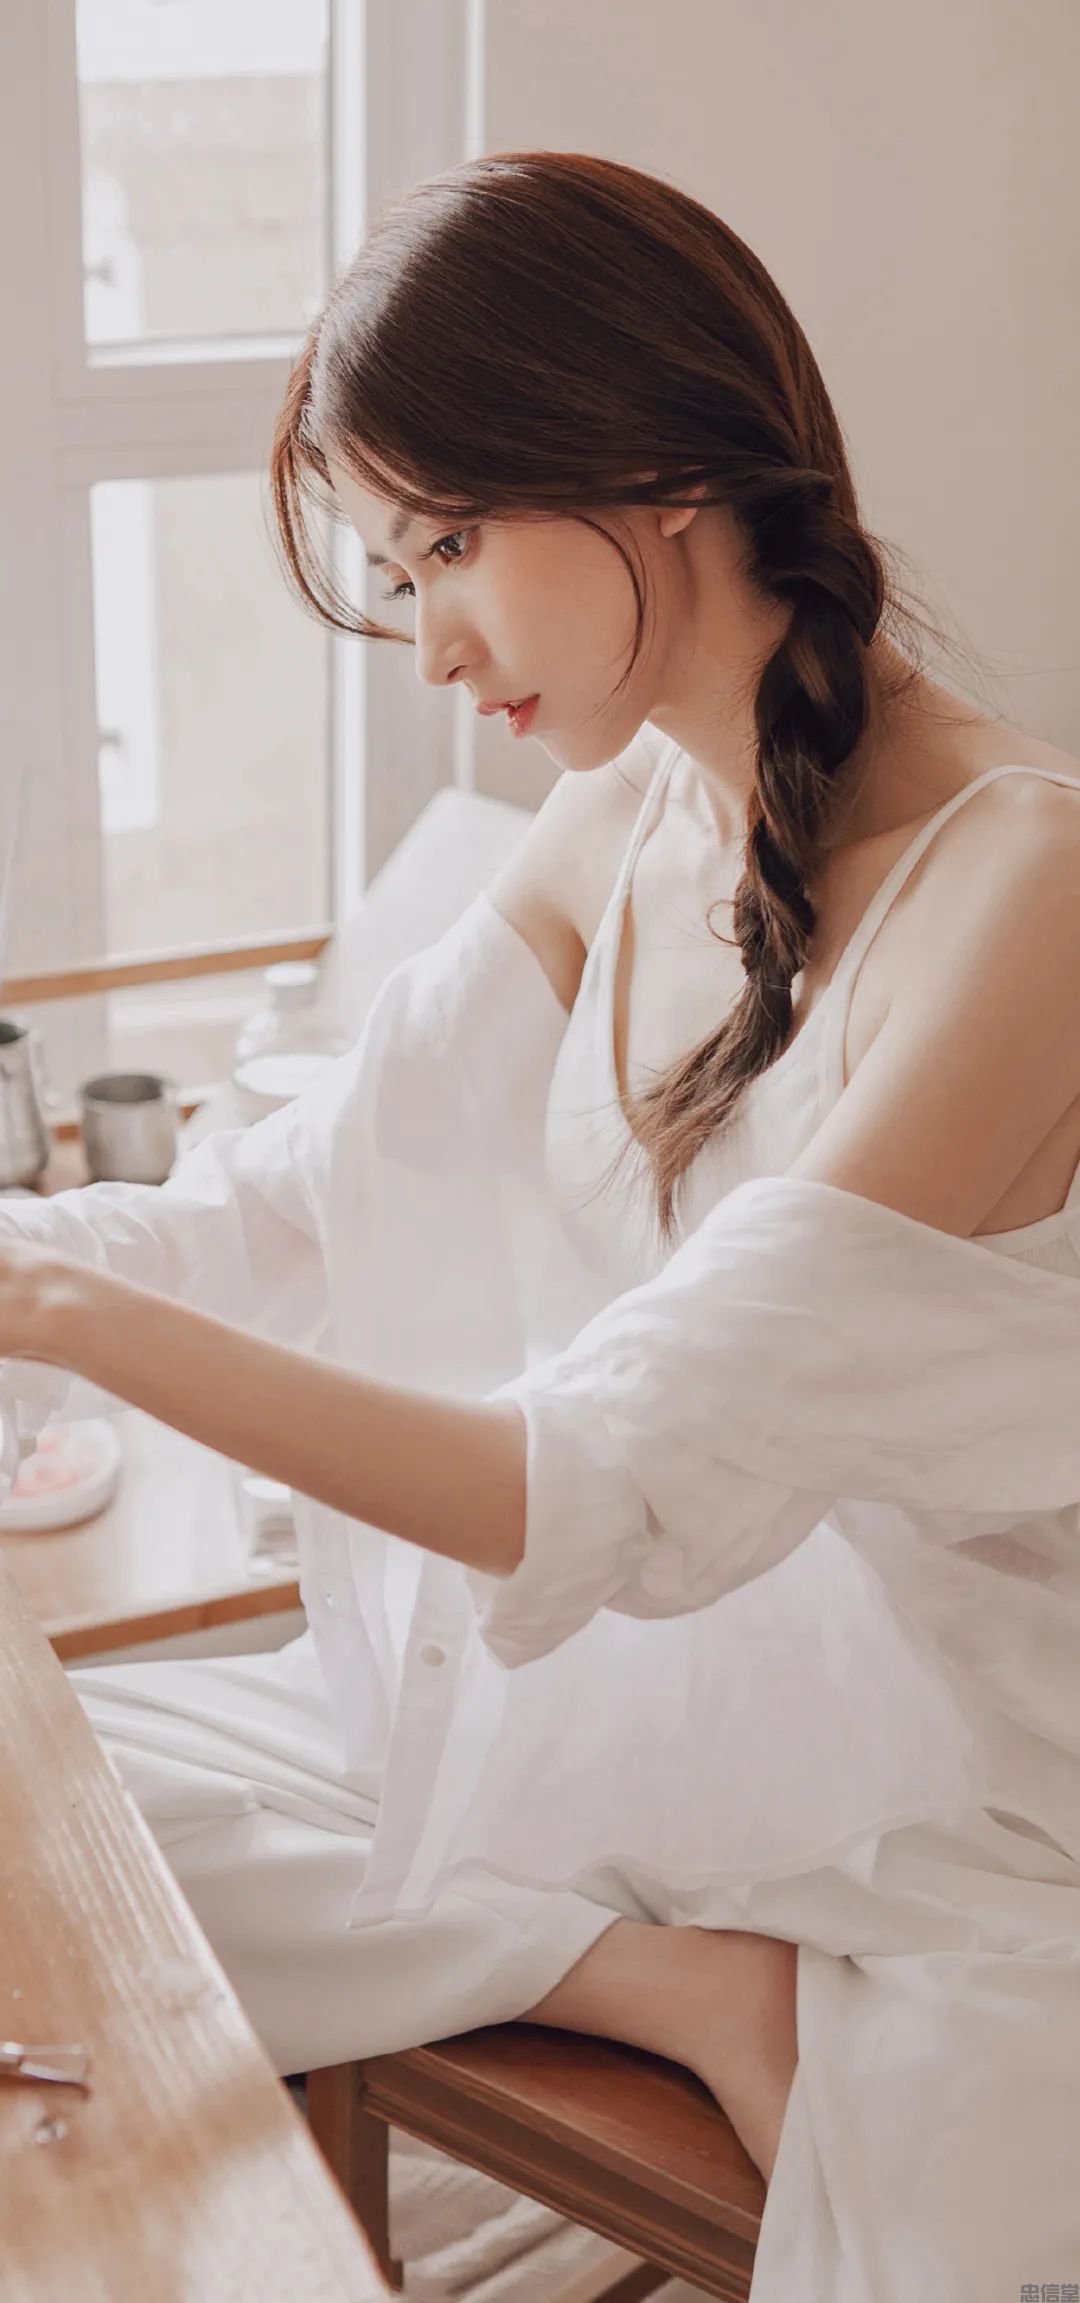 日本美女白色迷人高清手机壁纸图片 | 犀牛图片网